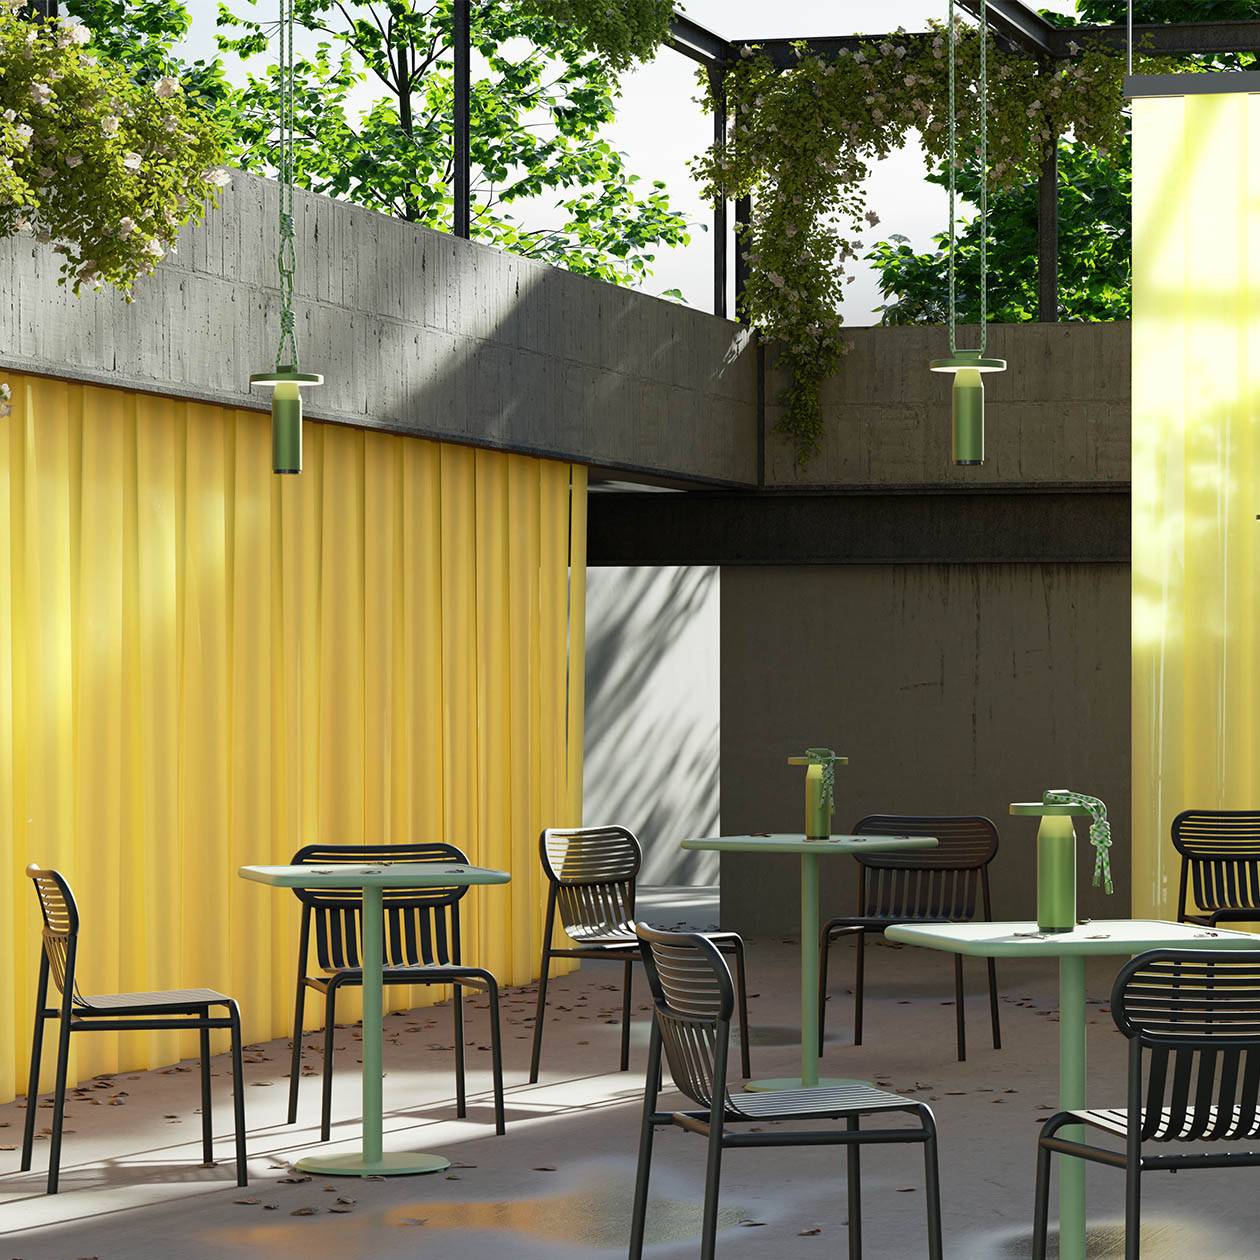 Week-End Gartenstuhl in Black präsentiert im Onlineshop von KAQTU Design AG. Gartenstuhl ist von Petite Friture